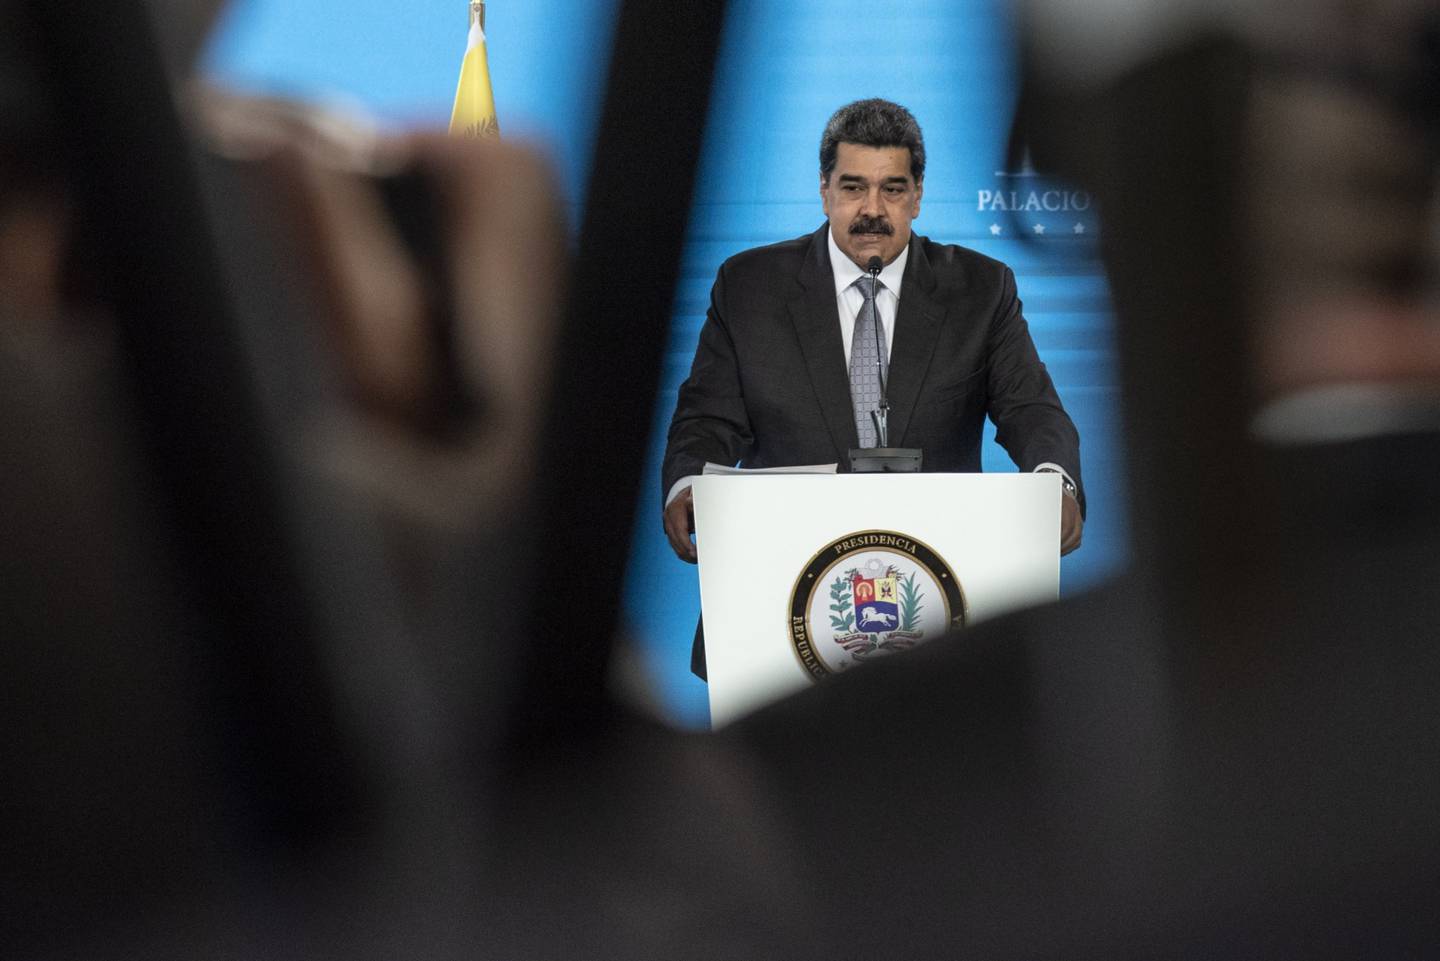 Nicolás Maduro habla durante una conferencia de prensa en el Palacio de Miraflores en Caracas, el 17 de febrero. Fotógrafo: Carlos Becerra / Bloombergdfd